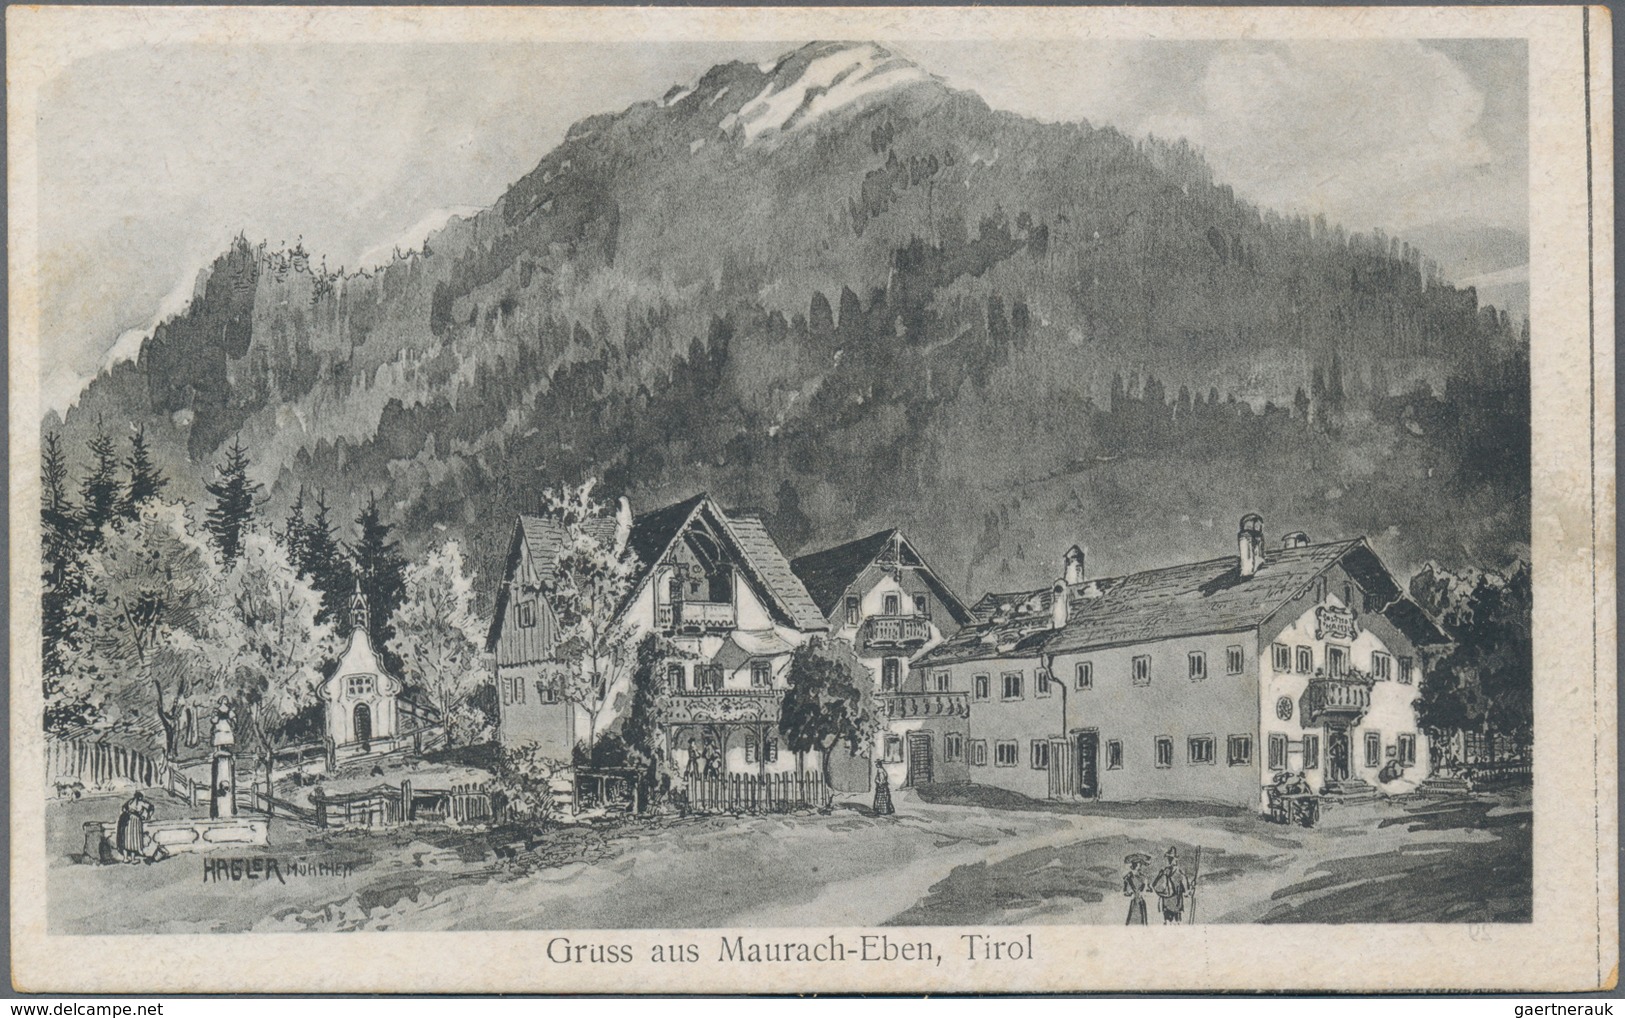 Ansichtskarten: Österreich: TIROL, zwei große Patkarten-Alben mit gut 740 historischen Ansichtskarte